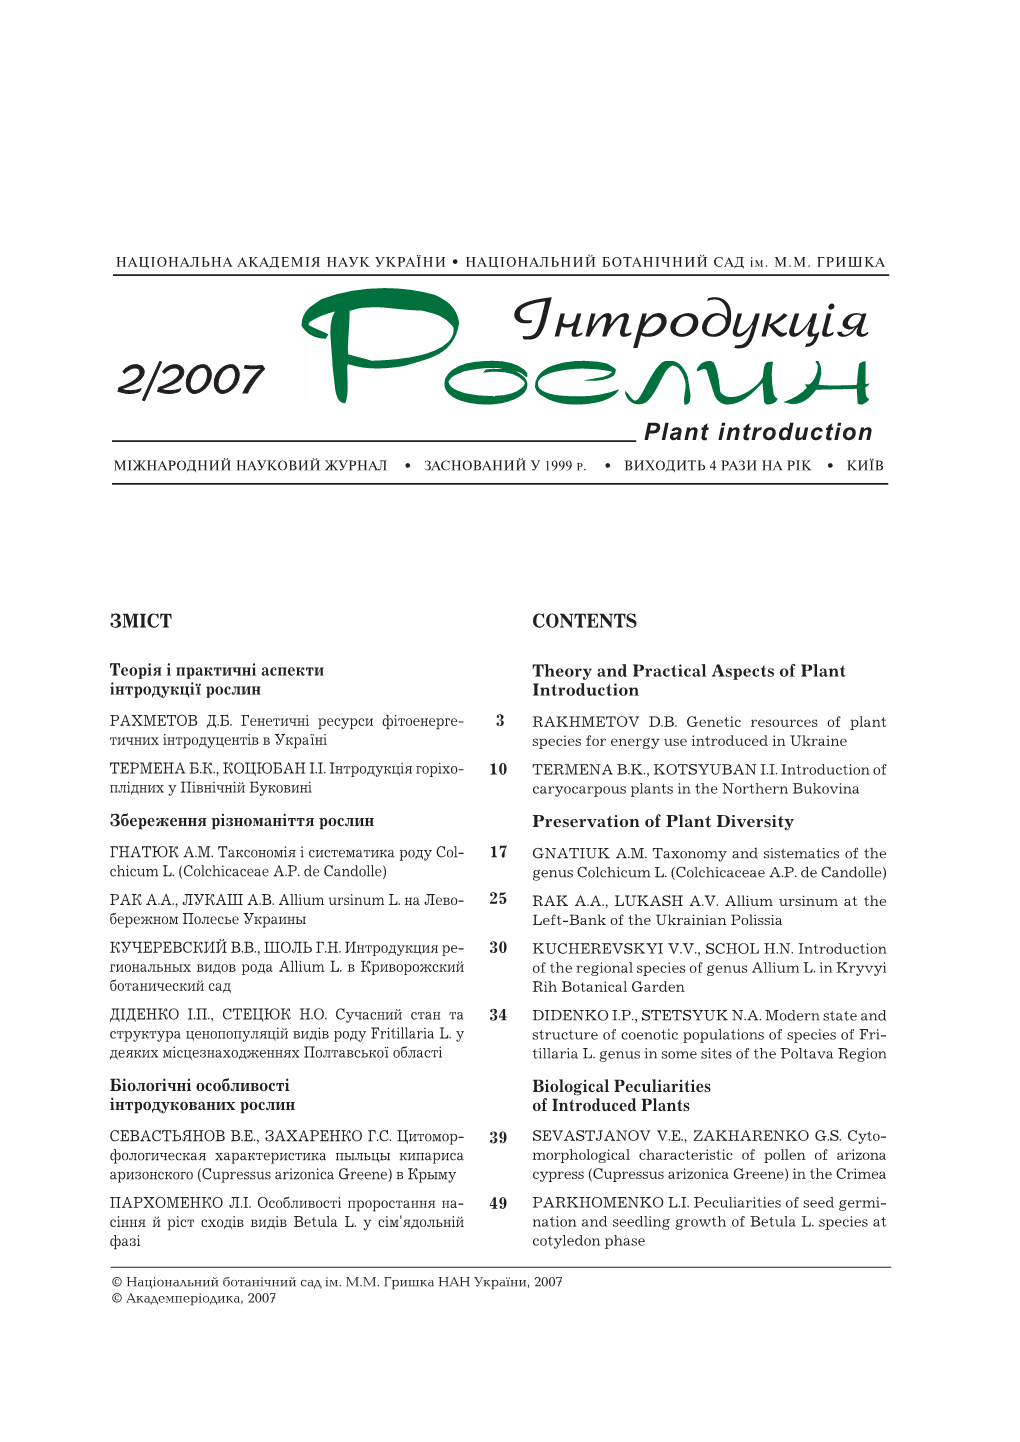 Plant Introduction, Vol. 34, 2007